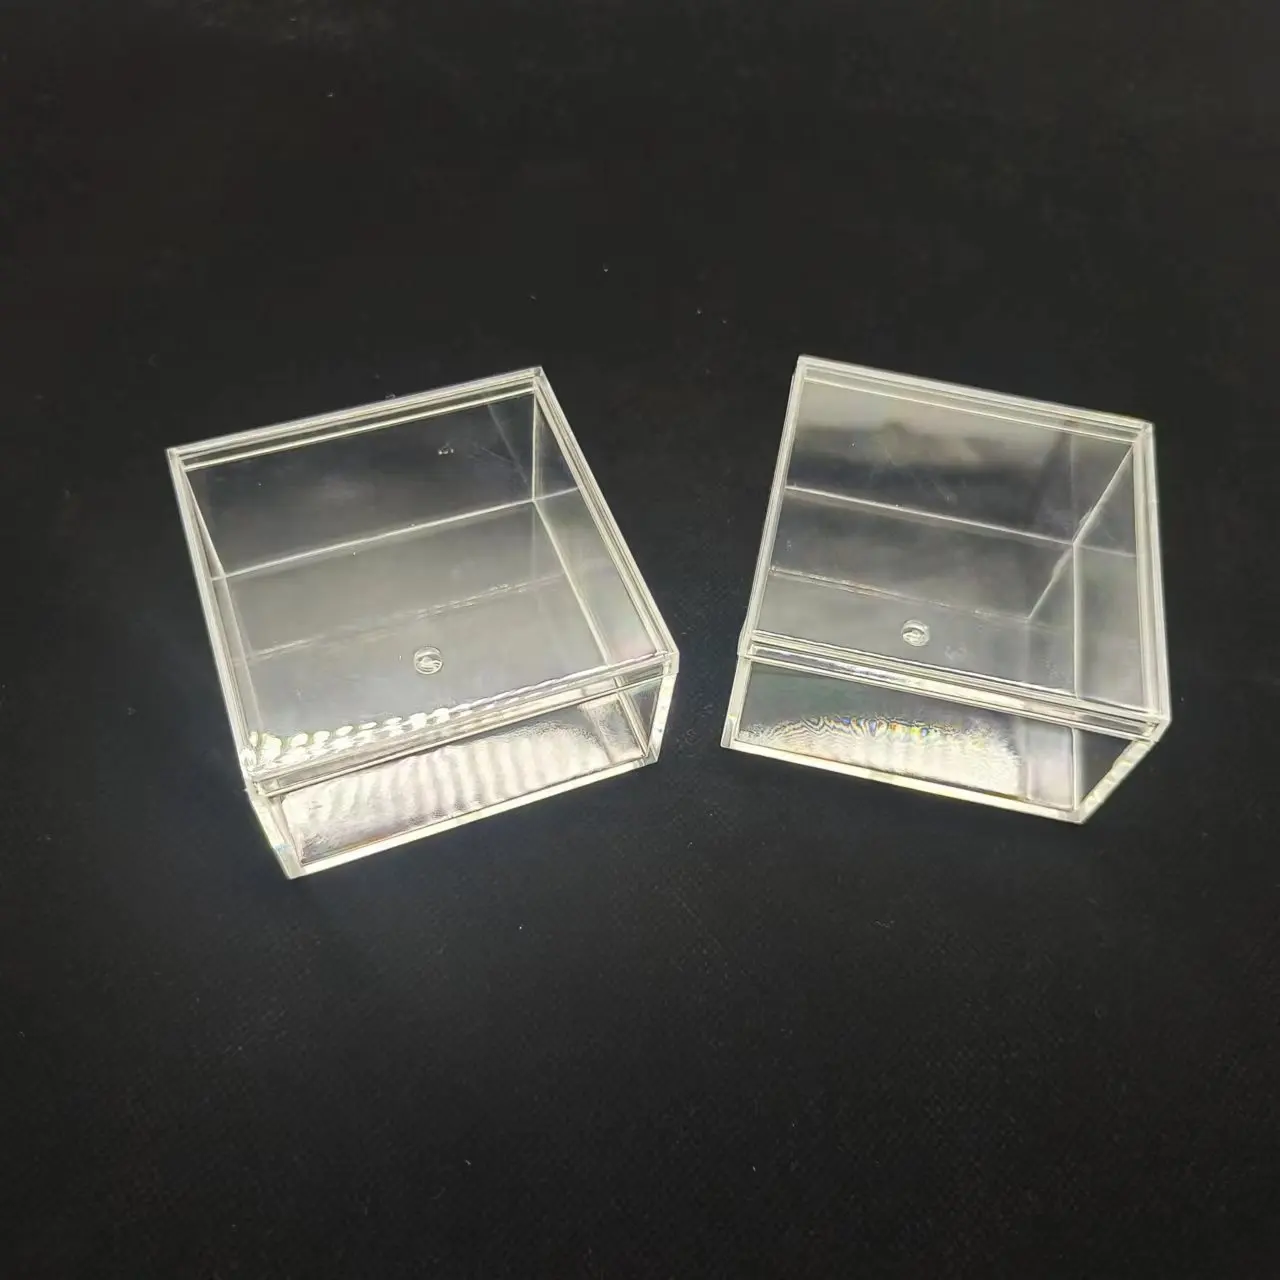 Caixa de cubo quadrado plástico transparente com tampa separada, para casos de organizador vazio